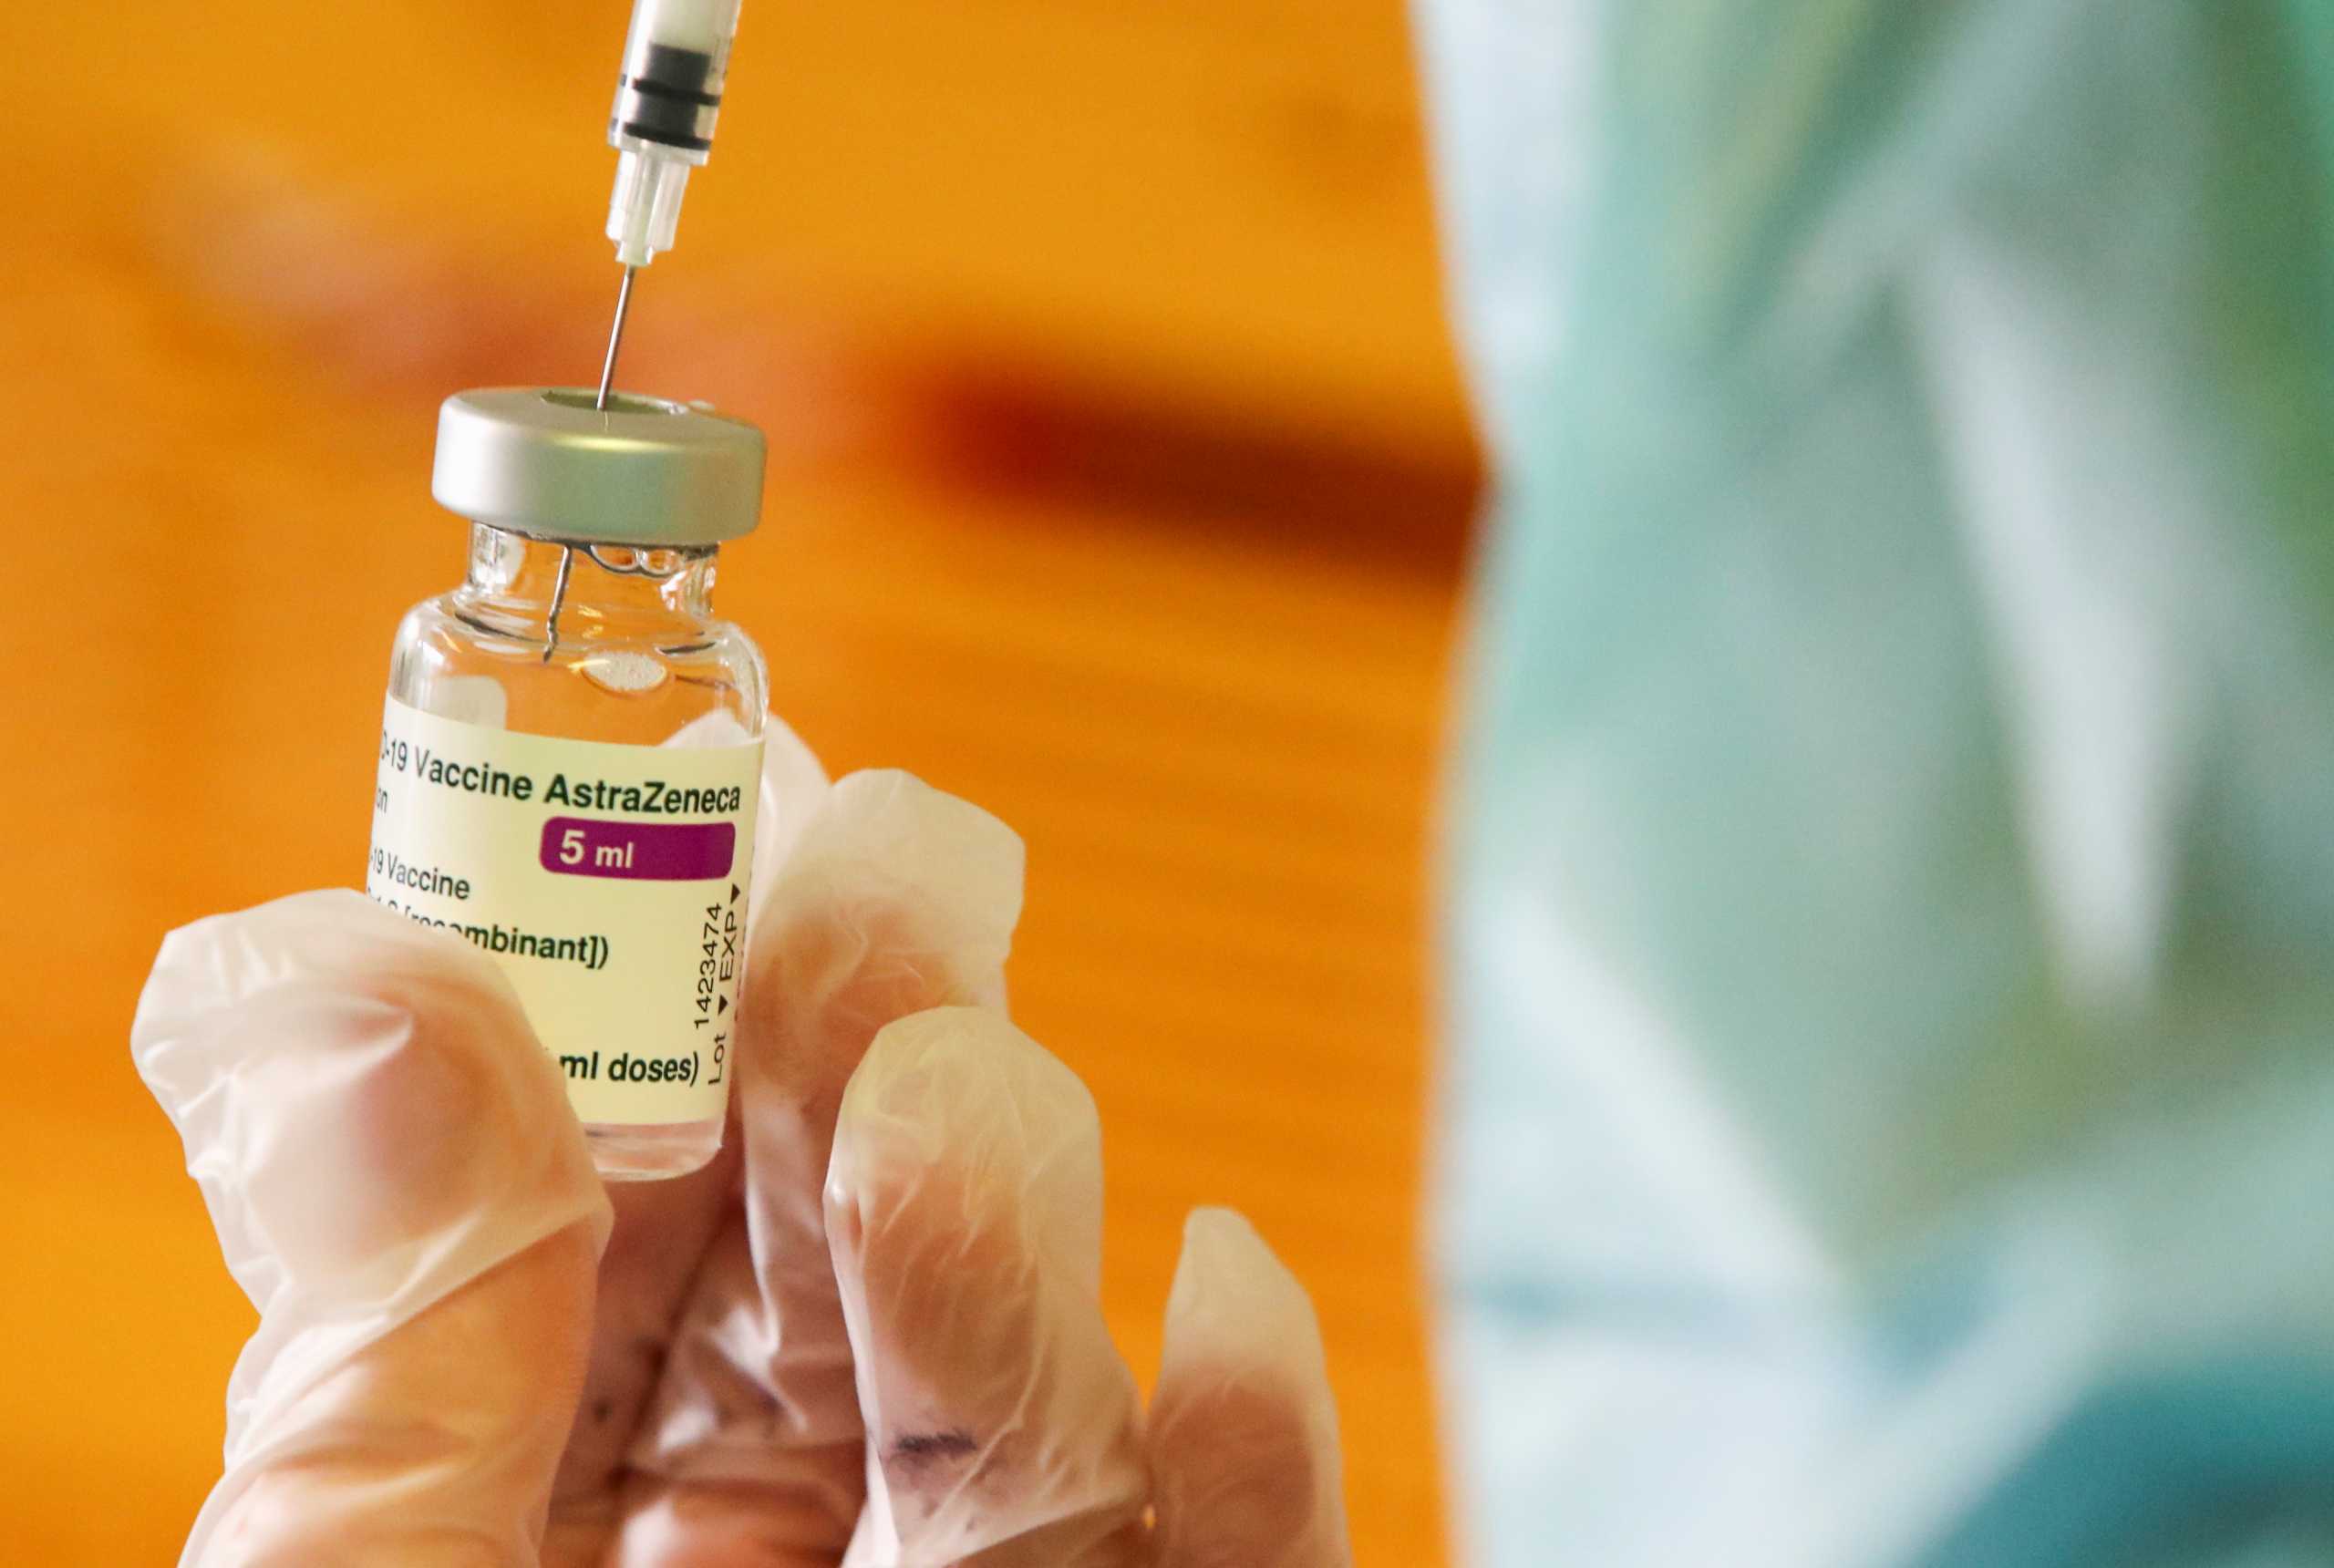 Εμβόλιο AstraZeneca με τσέπες… κρατικές! Το 97% της δαπάνης προήλθε από επιχορήγηση